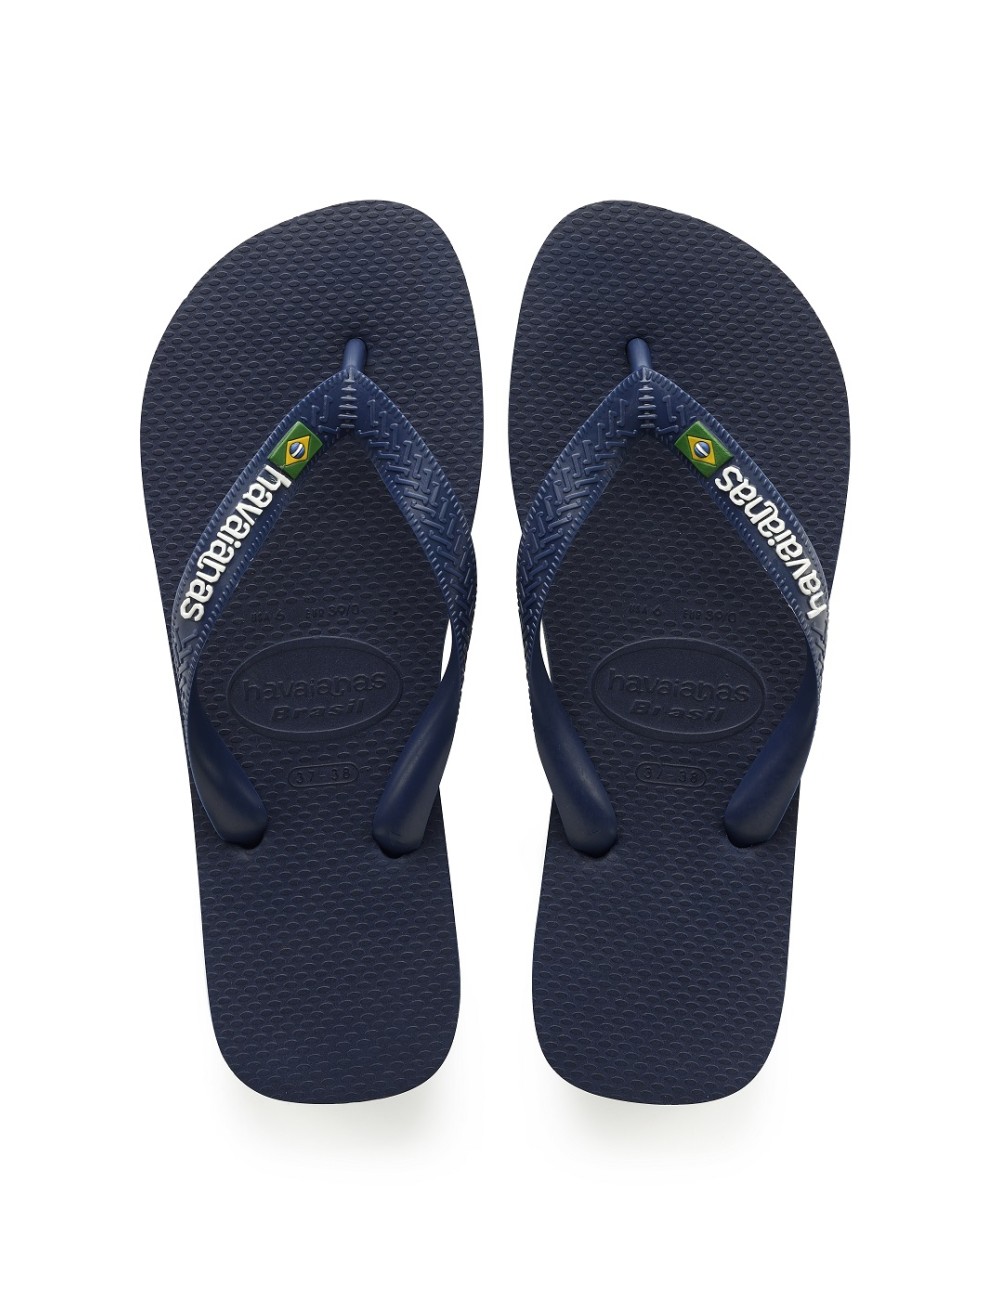 Havaianas Brasil Logo Navy bleu caoutchouc Flip Flops Mens Summer Beach chaussures occasionnelles 